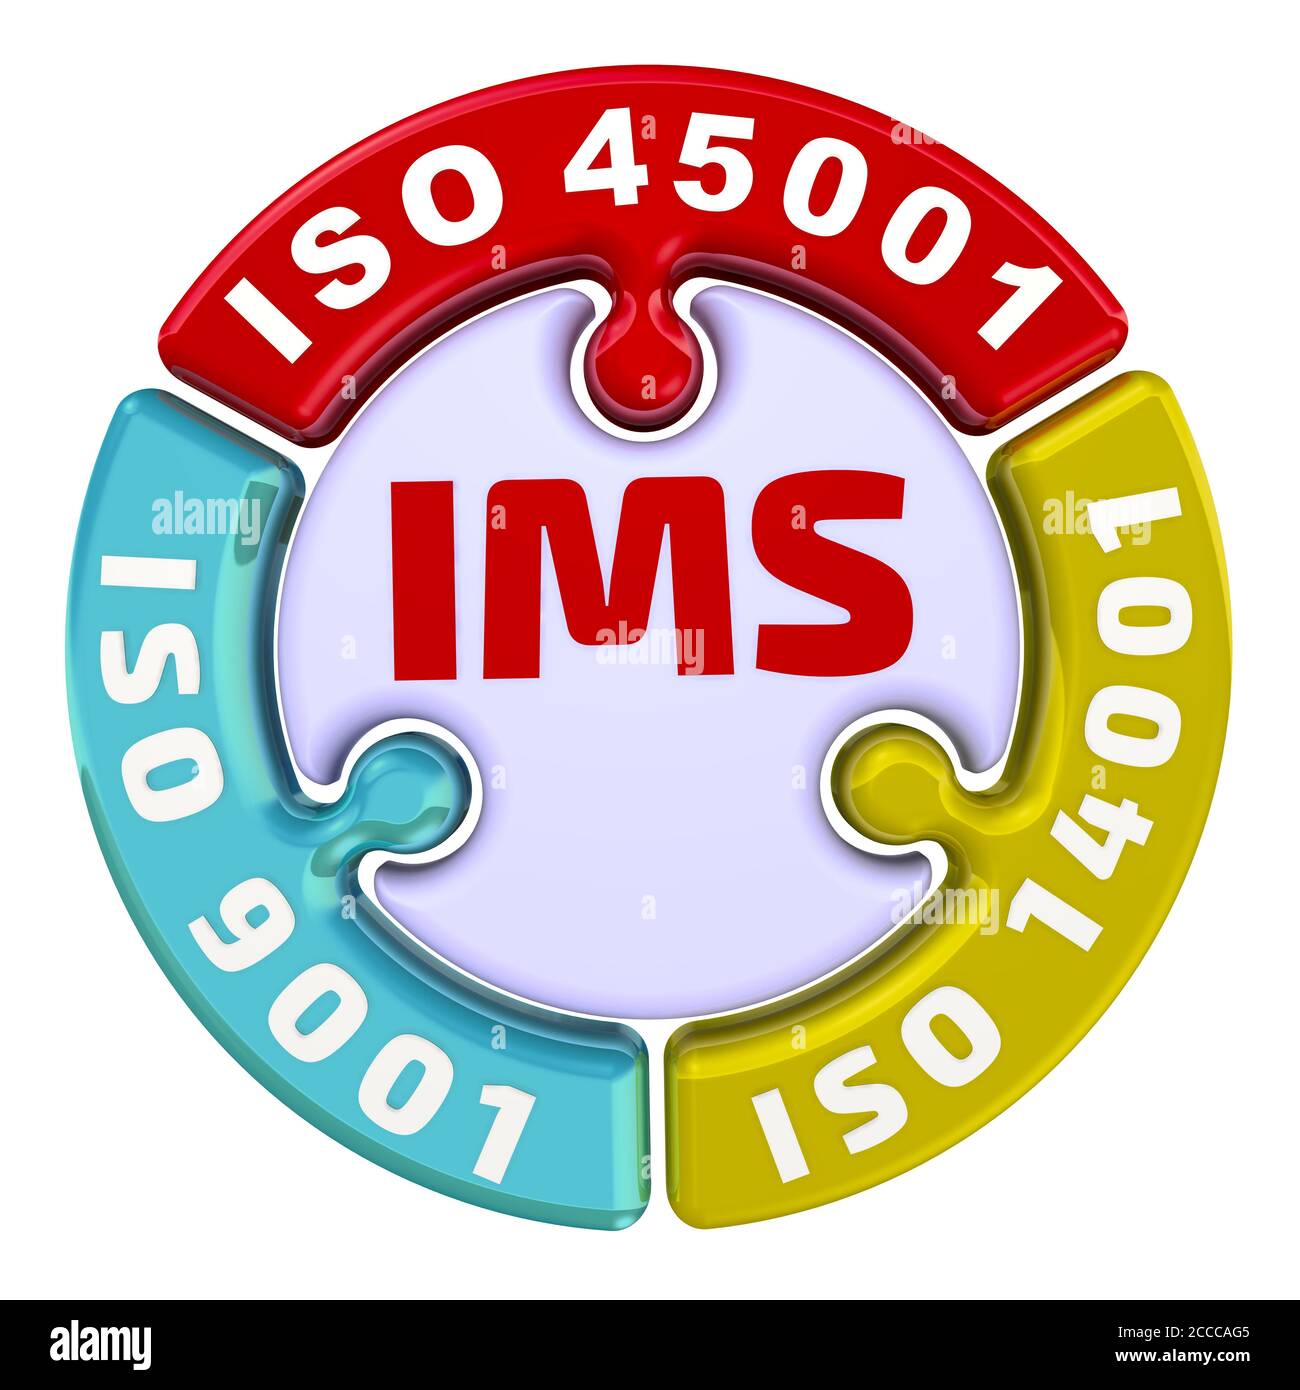 IMS. Système de gestion intégré ISO. L'inscription IMS. ISO 9001, ISO 14001, ISO 45001 sur le puzzle en forme de cercle. Illustration 3D Banque D'Images